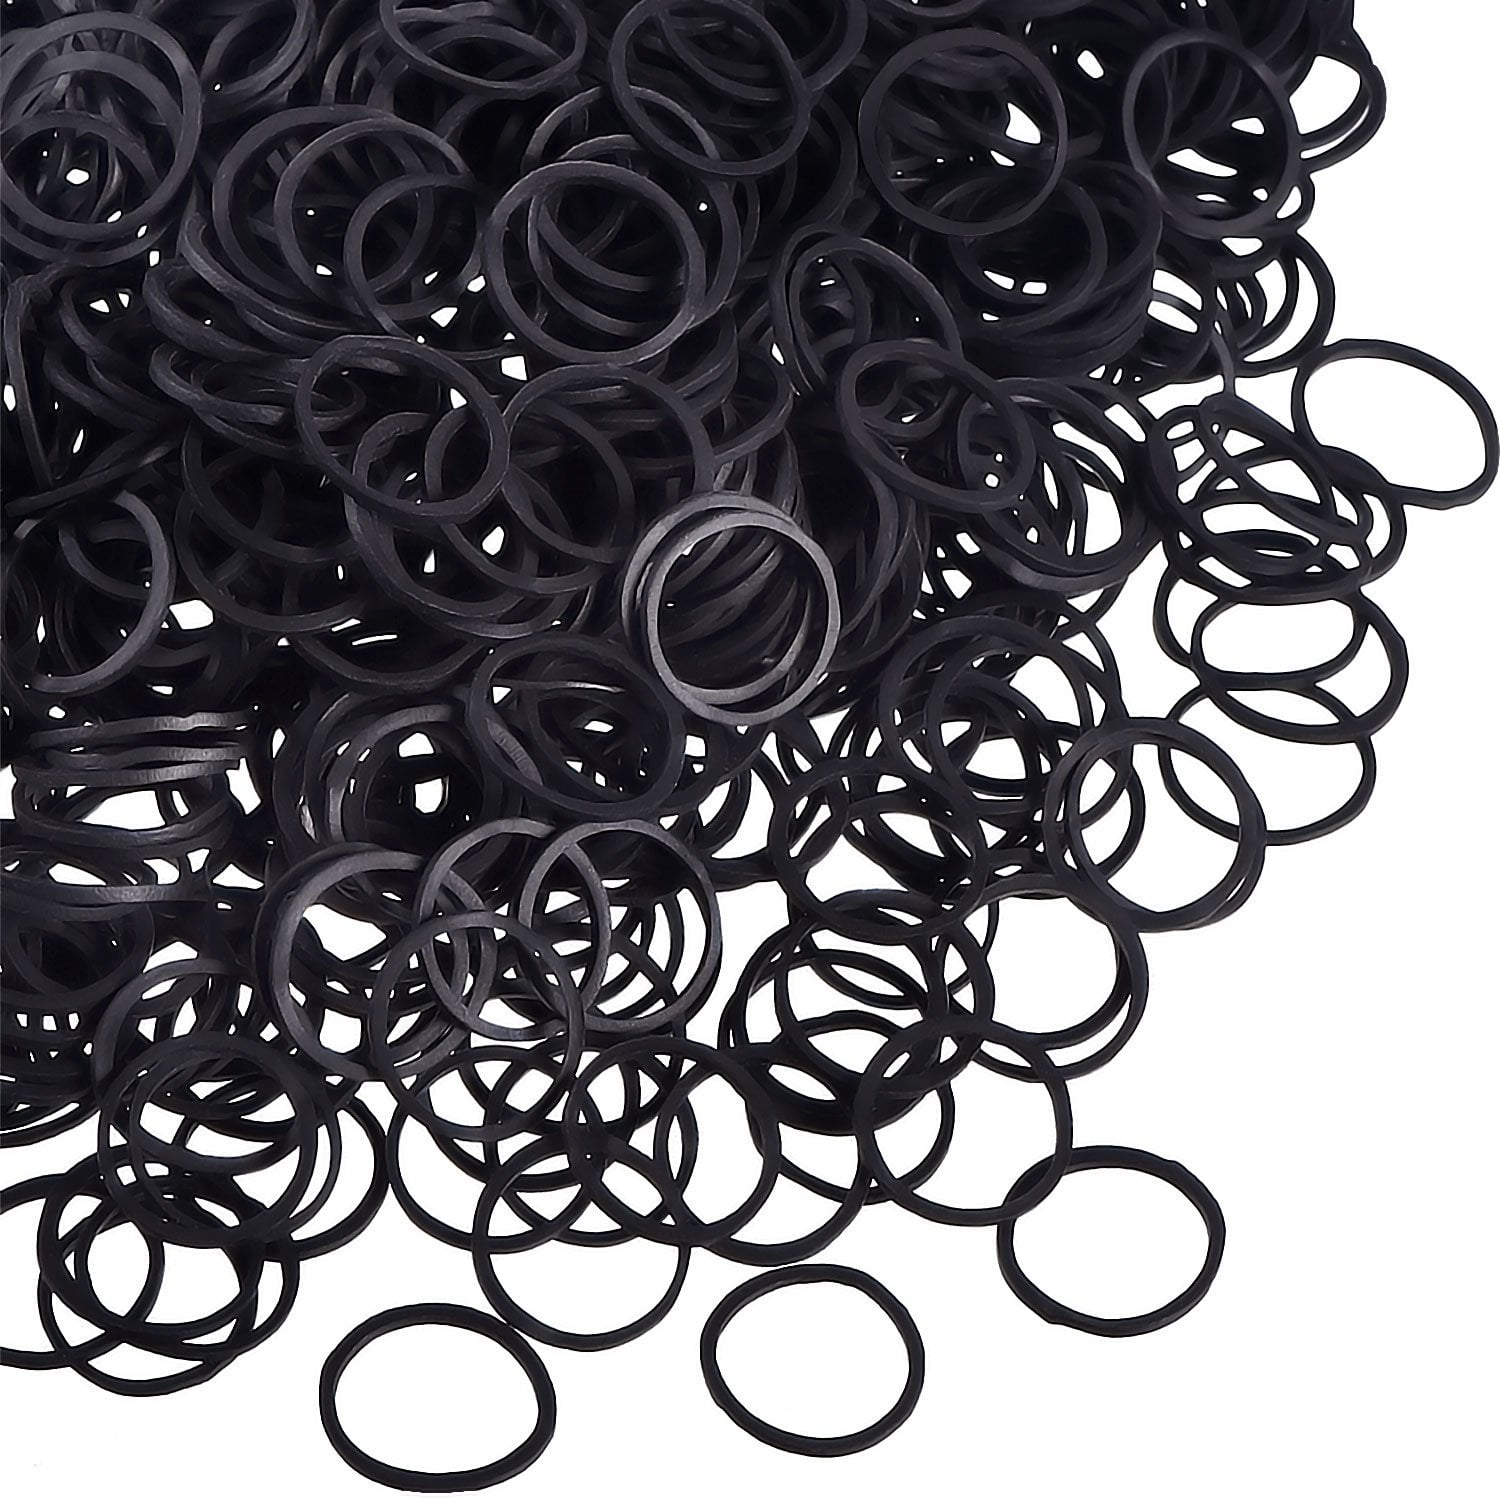 1500 Pcs Mini Rubber Bands Elastic Hair Ties Small Tiny Black Rubber Bands  Dispo